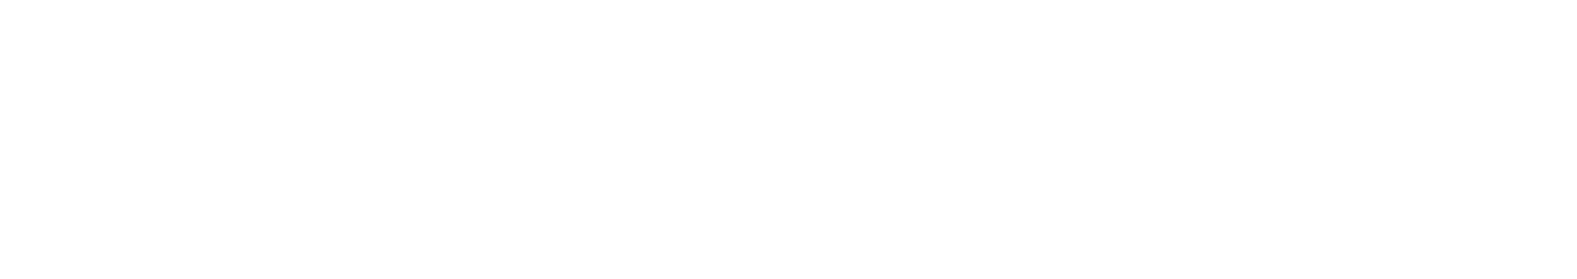 Microvast logo grand pour les fonds sombres (PNG transparent)